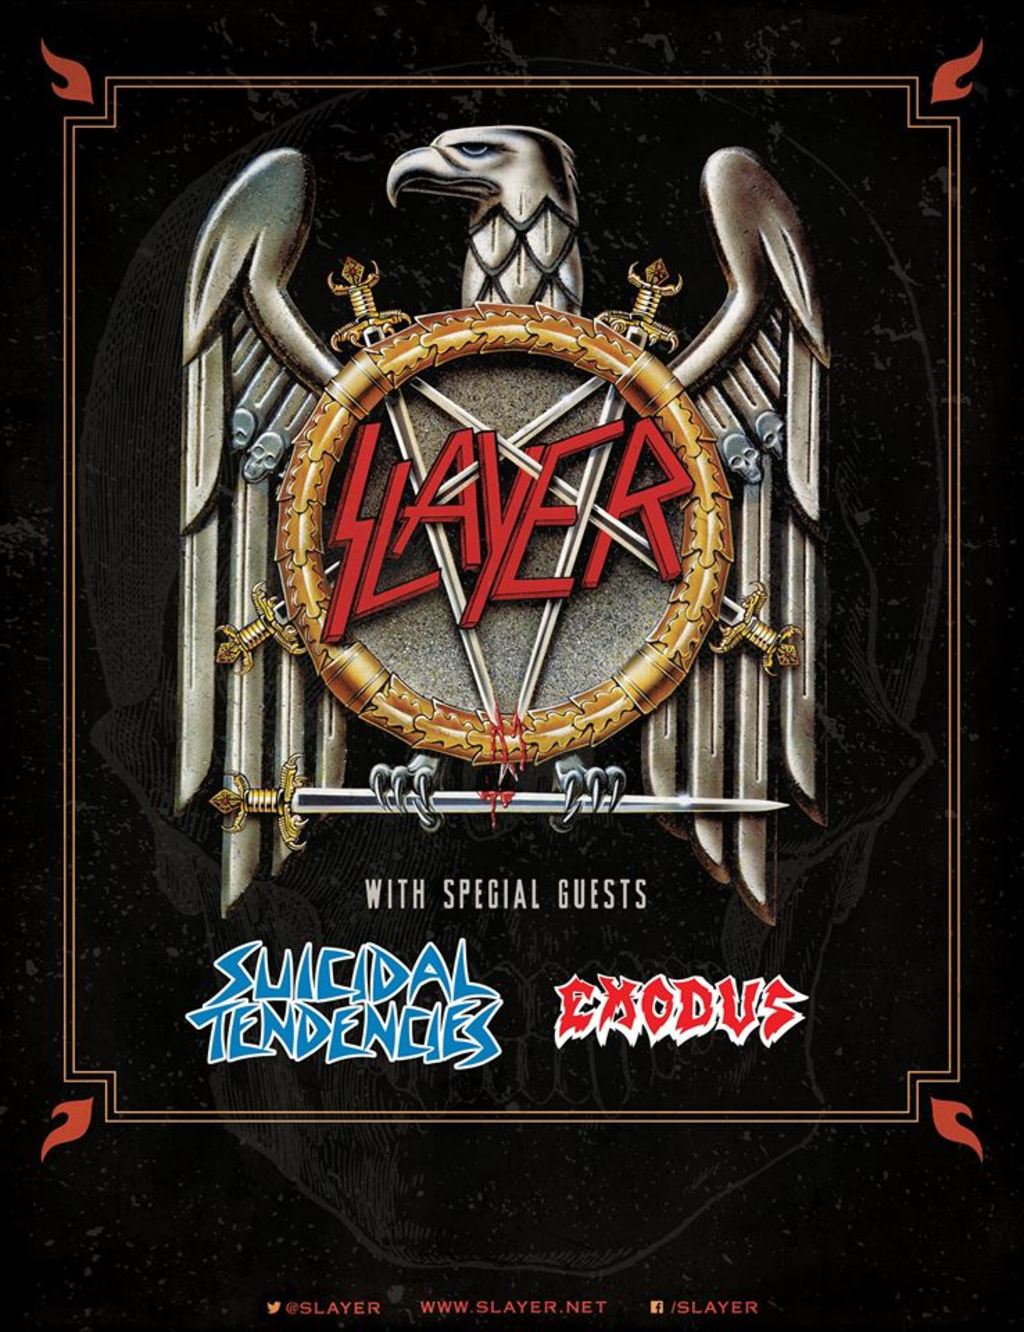 Slayer tour dates